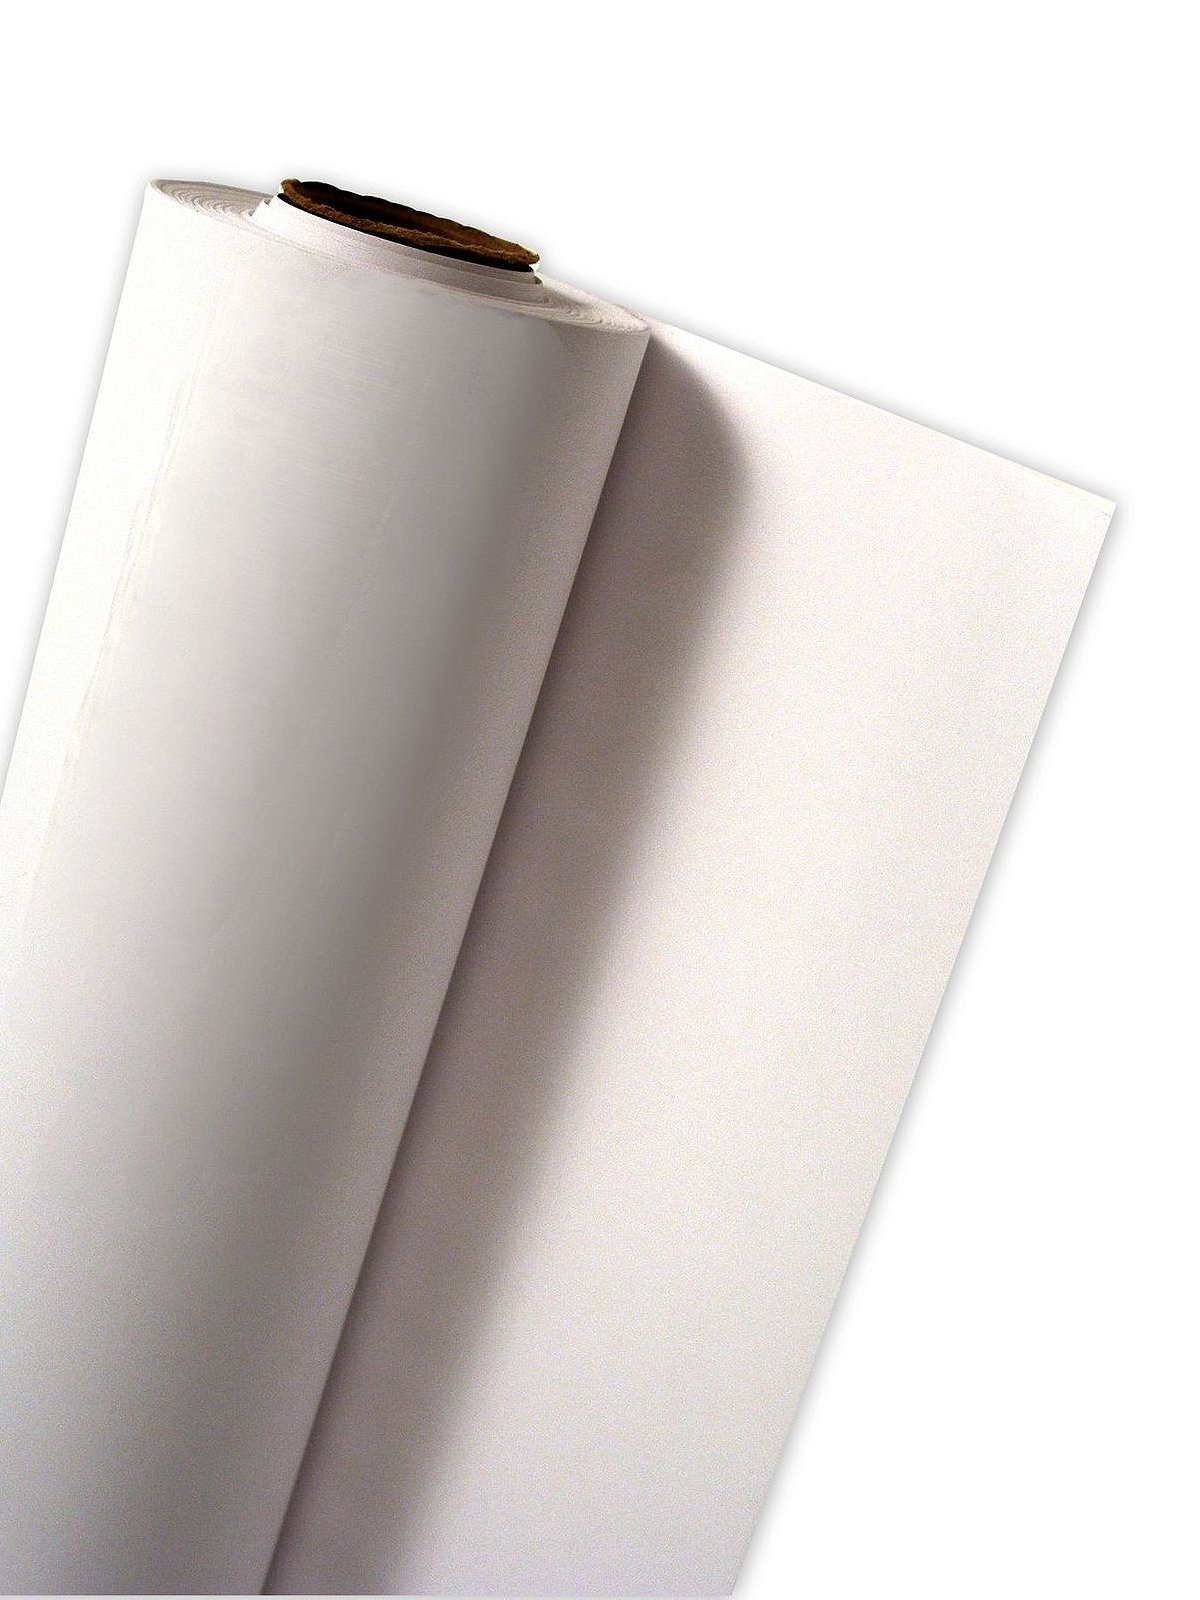 Pacon Newsprint Paper Roll